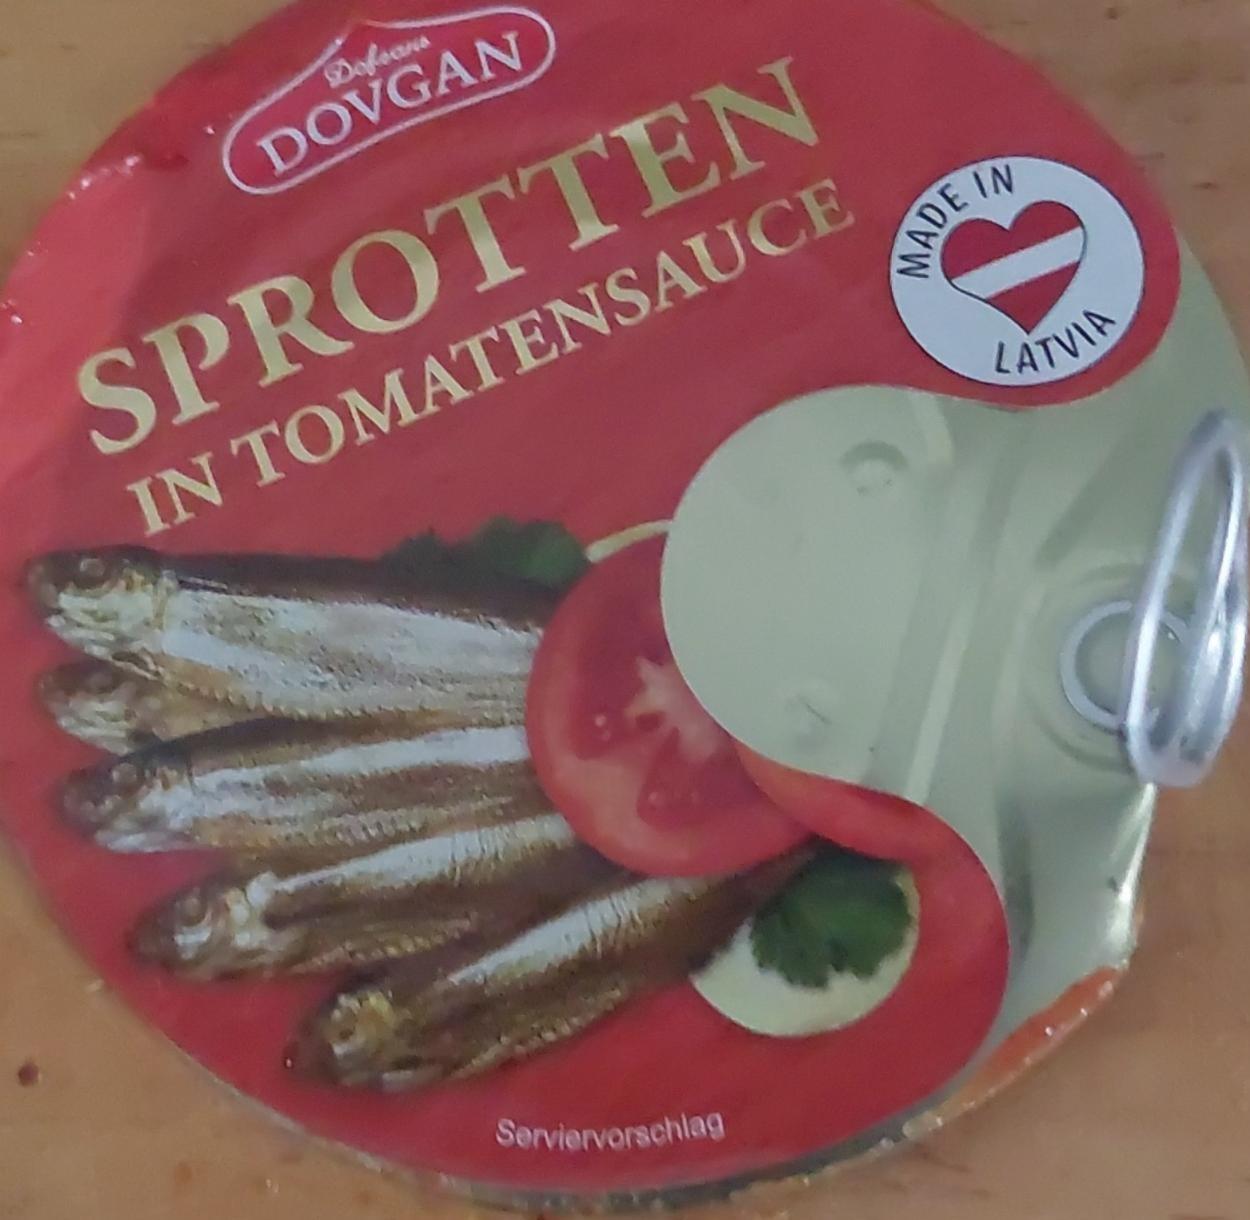 Фото - Шпроти в томатному соусі Sprotten In Tomatensauce Dovgan